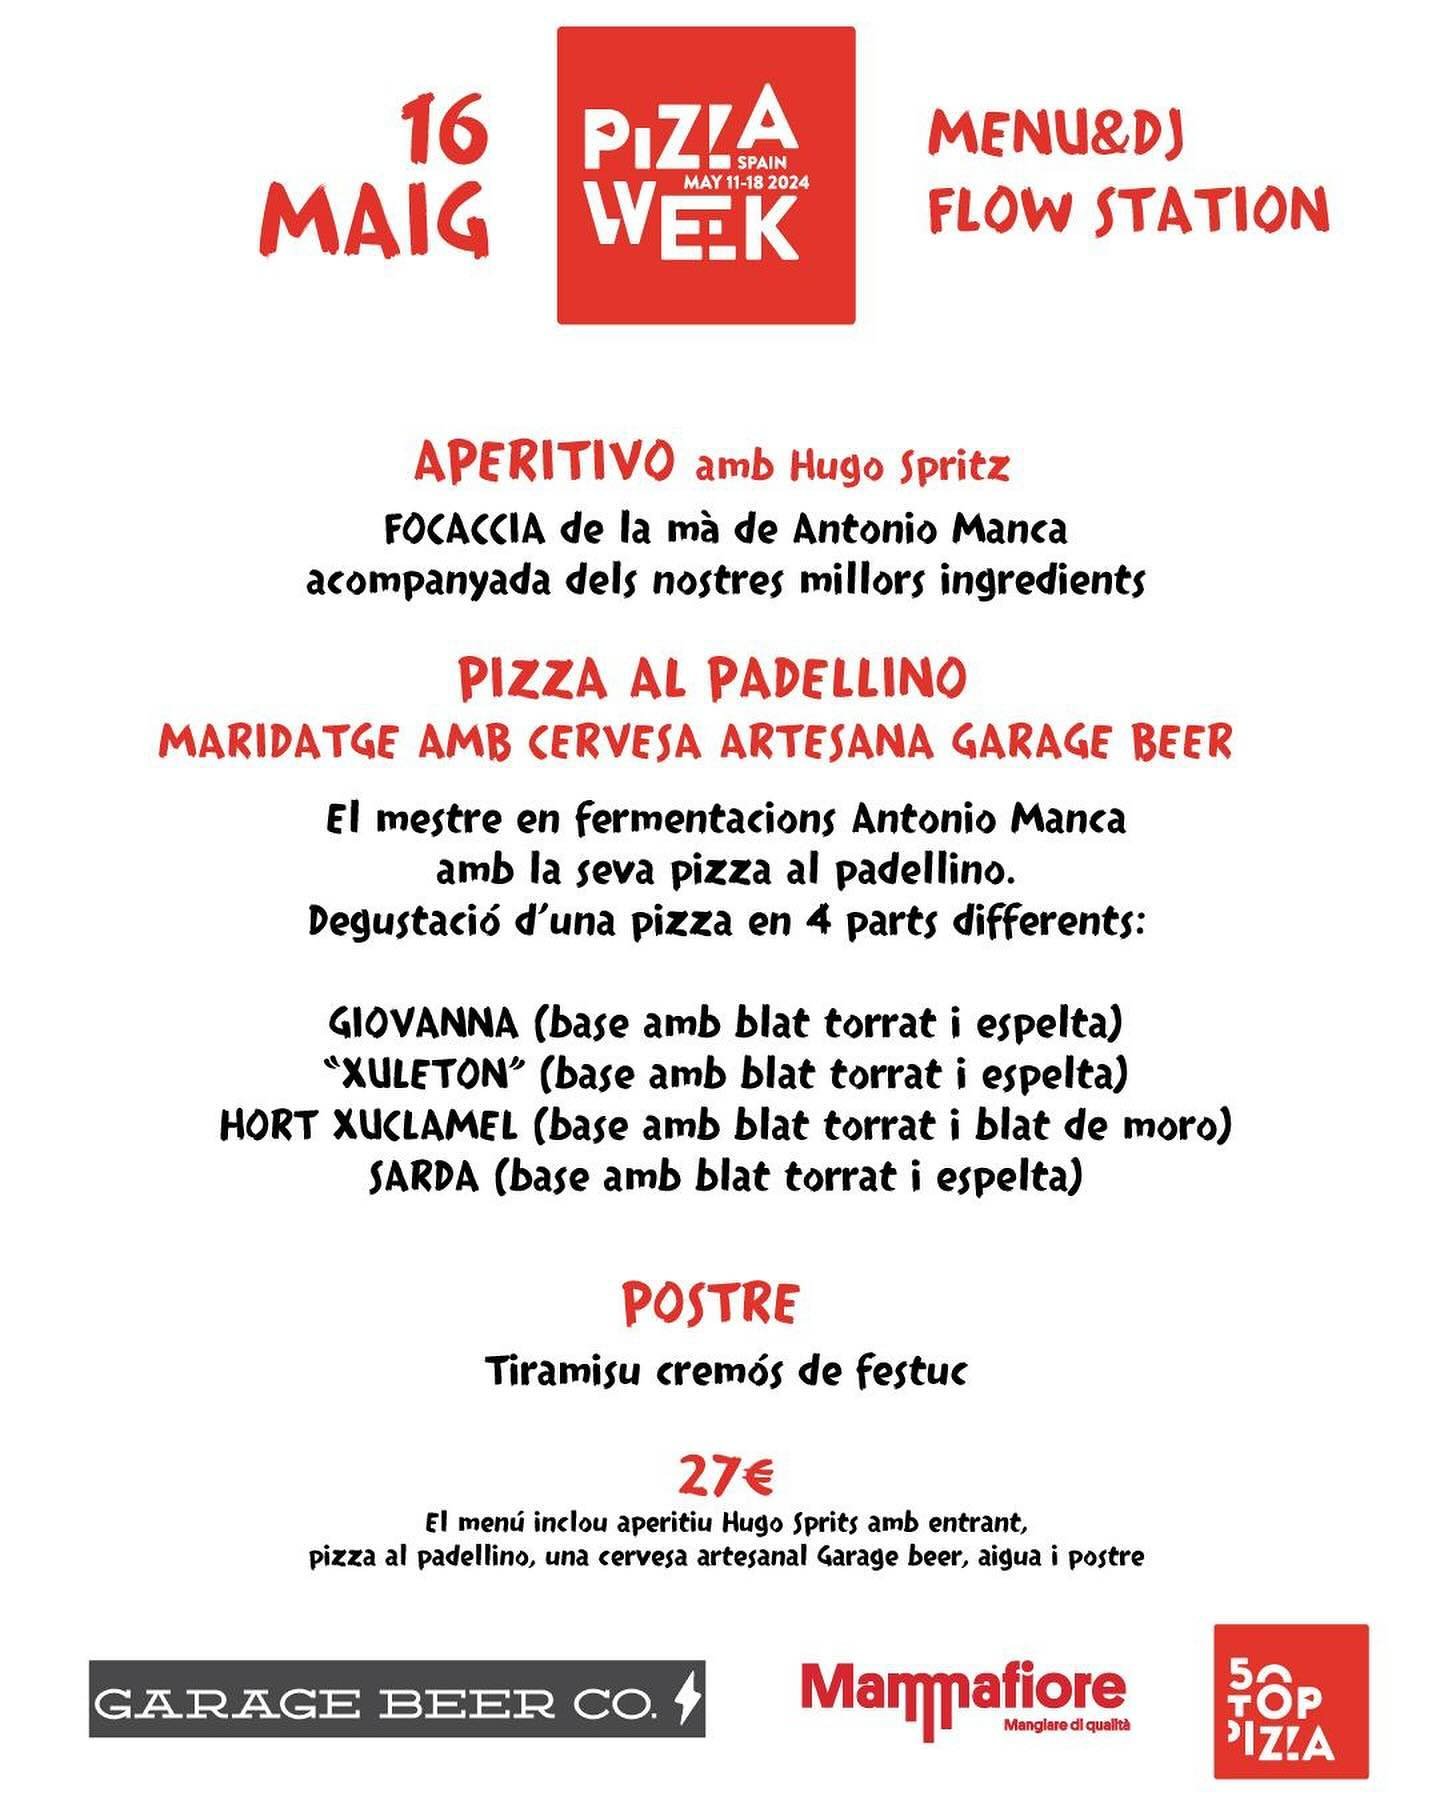 Aix&ograve; &eacute;s dem&agrave;! Amb @tonifood_ i @garagebeerco 
Dem&agrave; Amore per la Pizza al Padellino.
Seguim amb les activitats de la #PizzaWeek
Reserves - www.mecanicpizza.com
-
#PizzaArtesana #PizzaNapoletana #AmoreperlaPizza #SantCugat